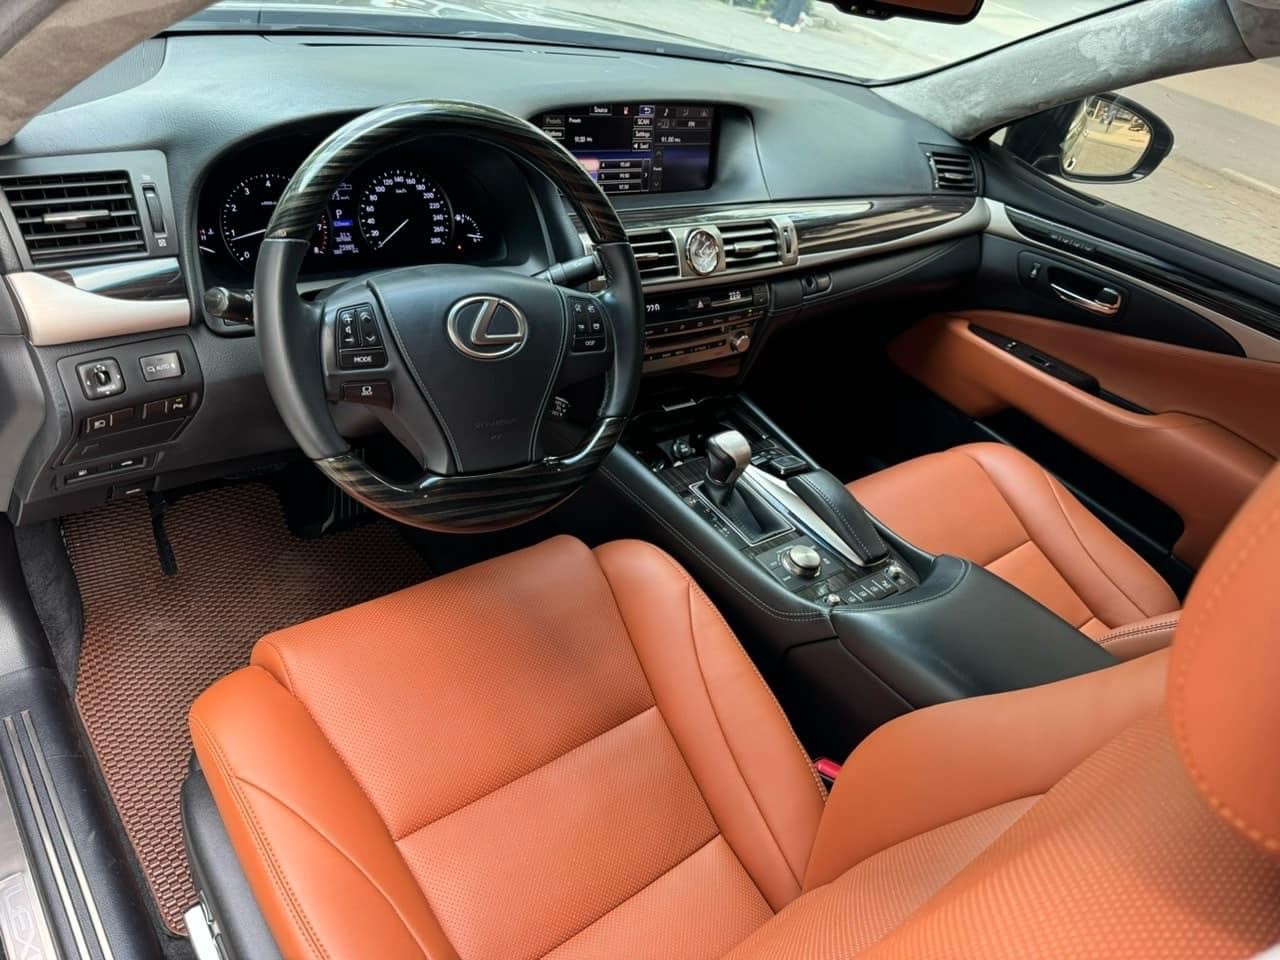 Lexus LS 460L, sản xuất 2015, màu đen, nội thất nâu da bò cực đẹp.